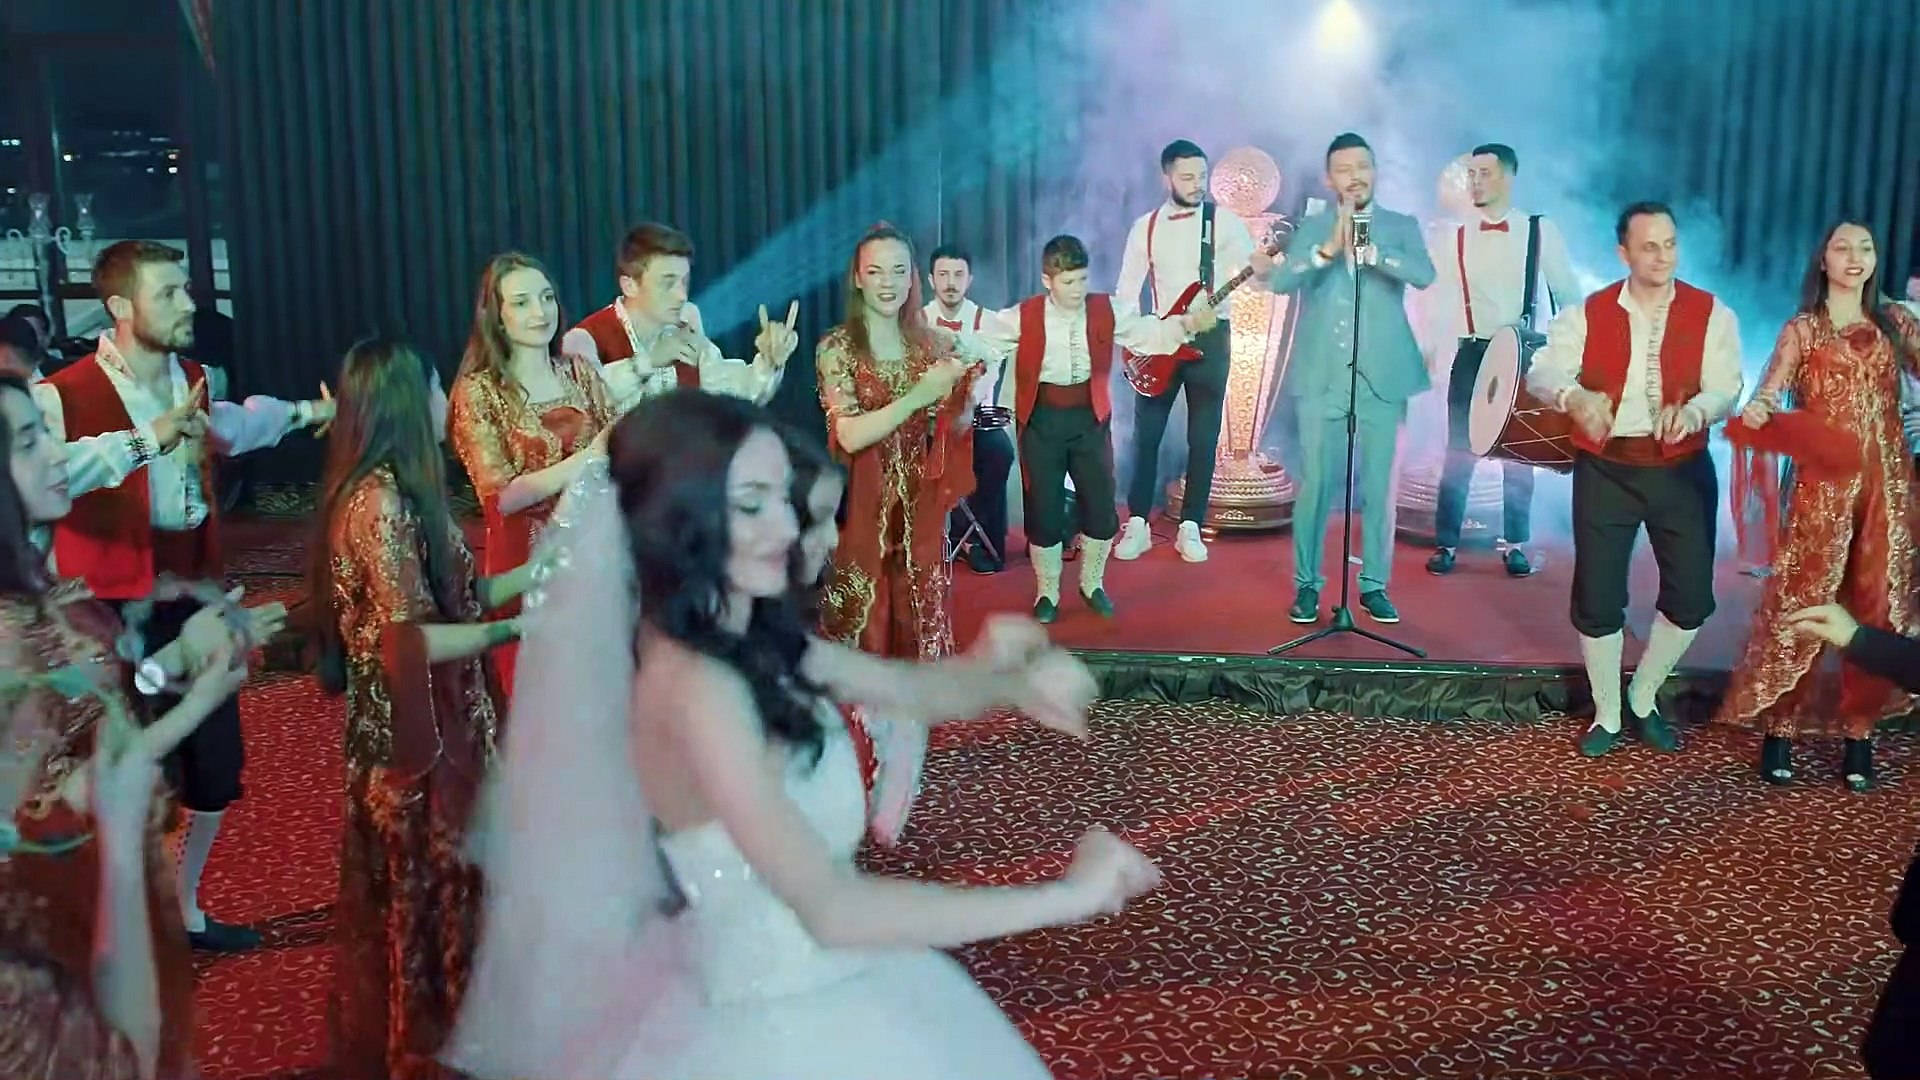 Sincanlı Erkal - Kınalar Yansın (Gelin Damat Oyunu) 2019 - Dailymotion Video